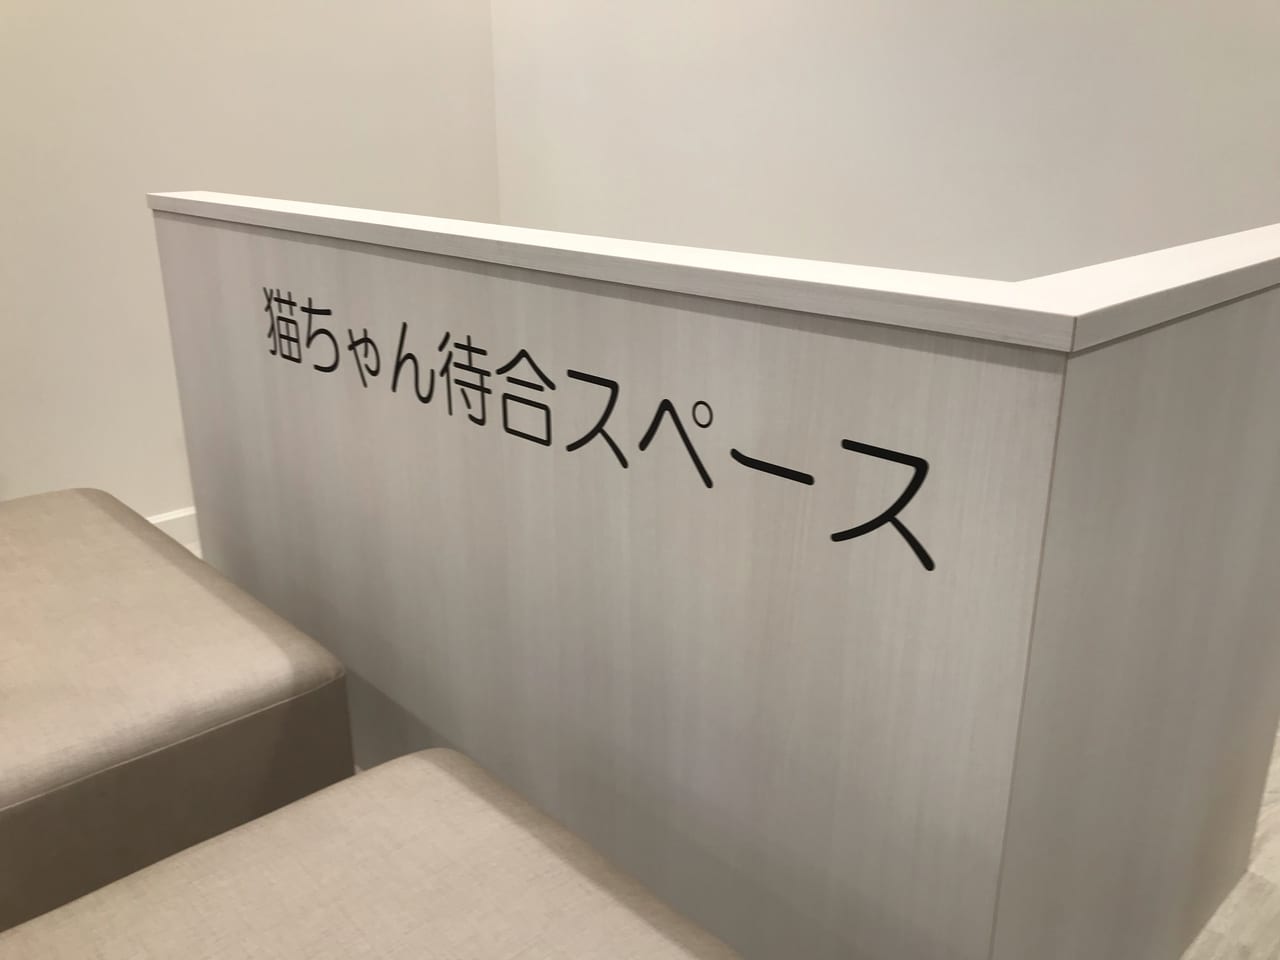 世田谷区ペットのコジマソコラ用賀店が2021年9月4日グランドオープンしました！